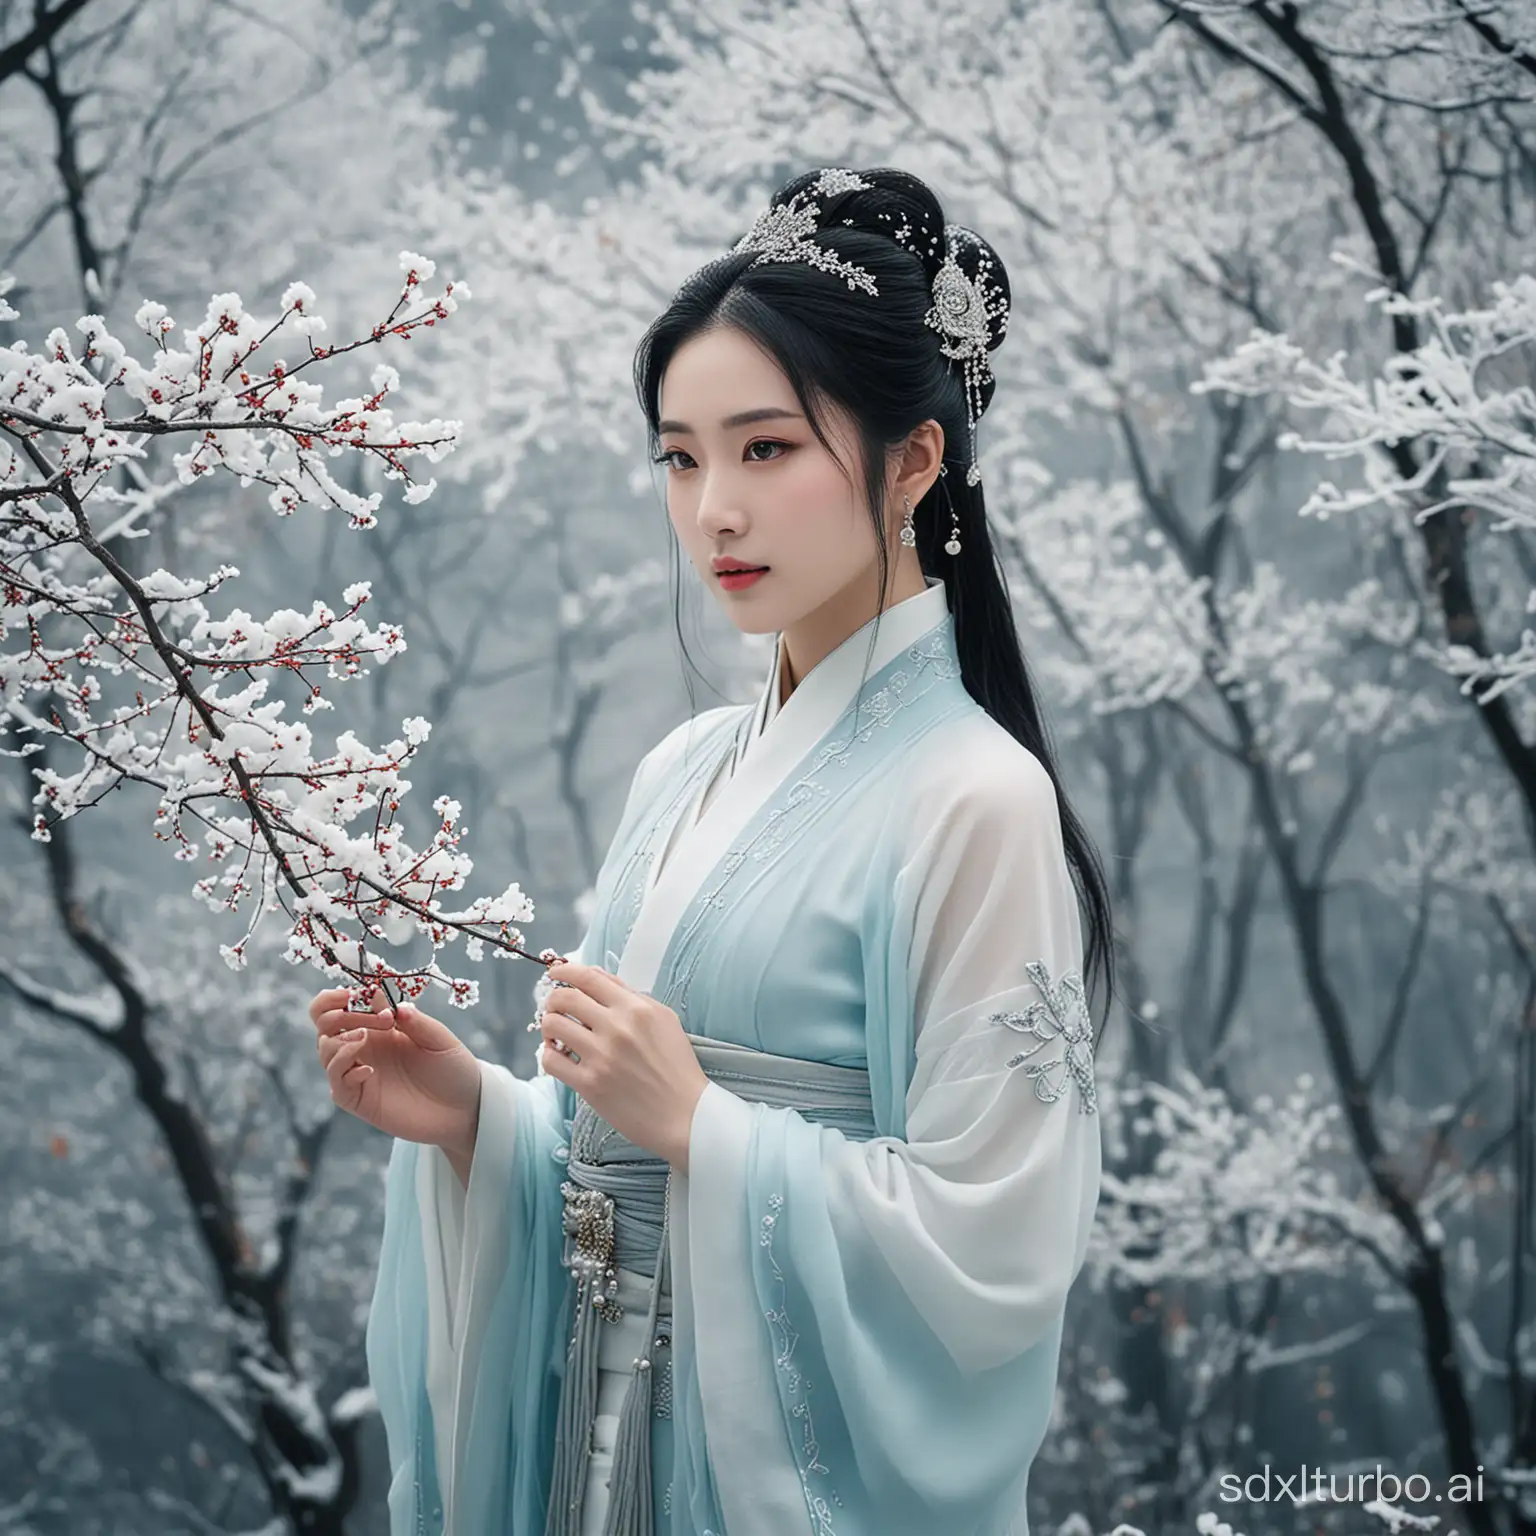 中国的清冷美丽又有大爱的看着很缥缈的神女